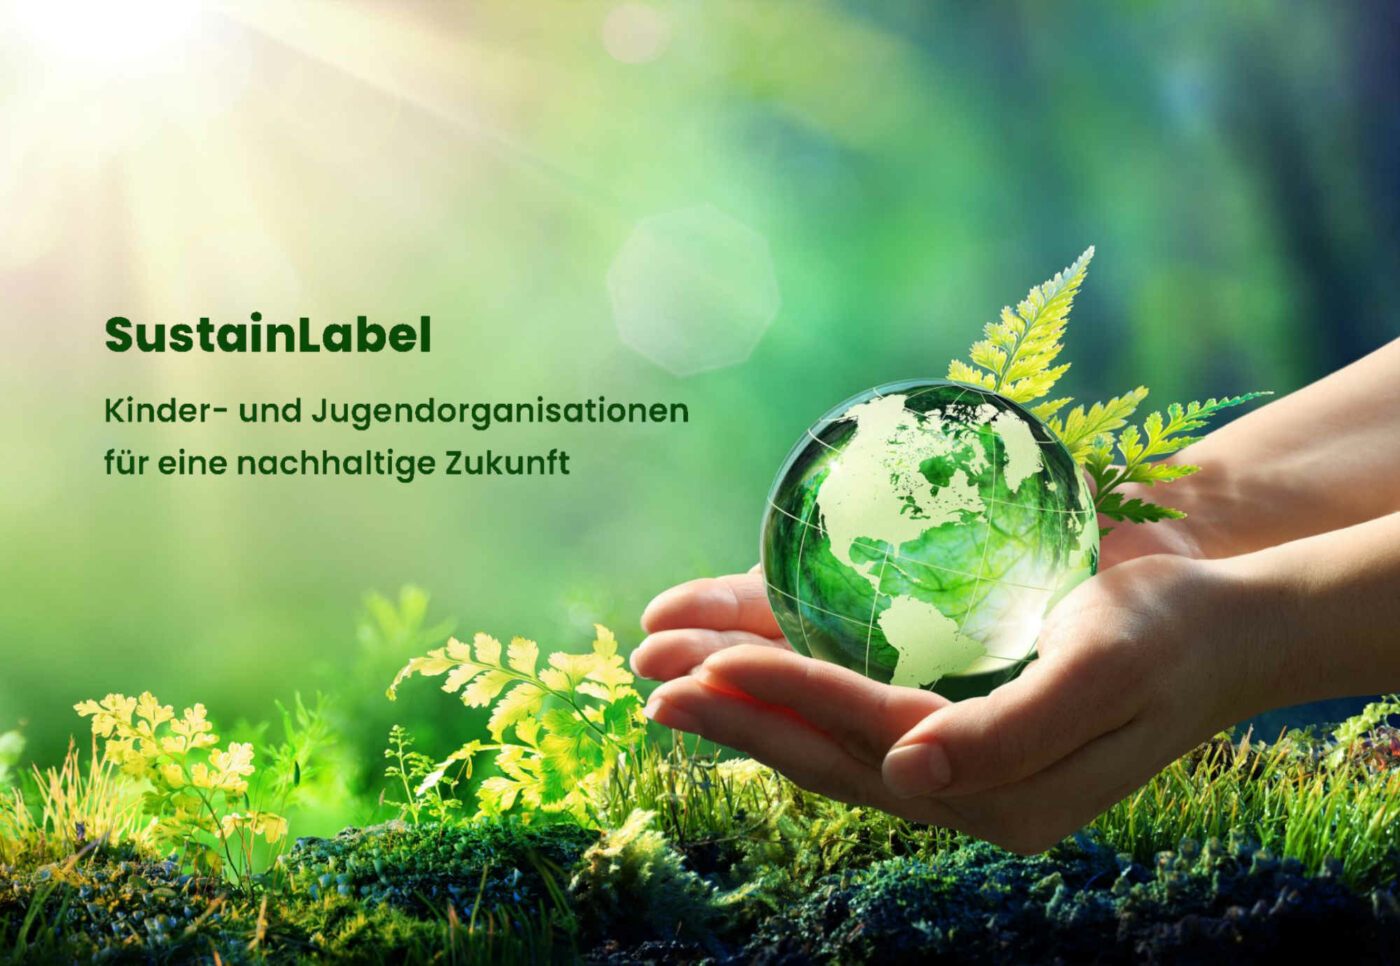 Die neue Auszeichnung „sustainLabel“ soll nachhaltiges Engagement in Kinder- und Jugendorganisationen fördern. Grafik: sustainlabel.org/Screenshot